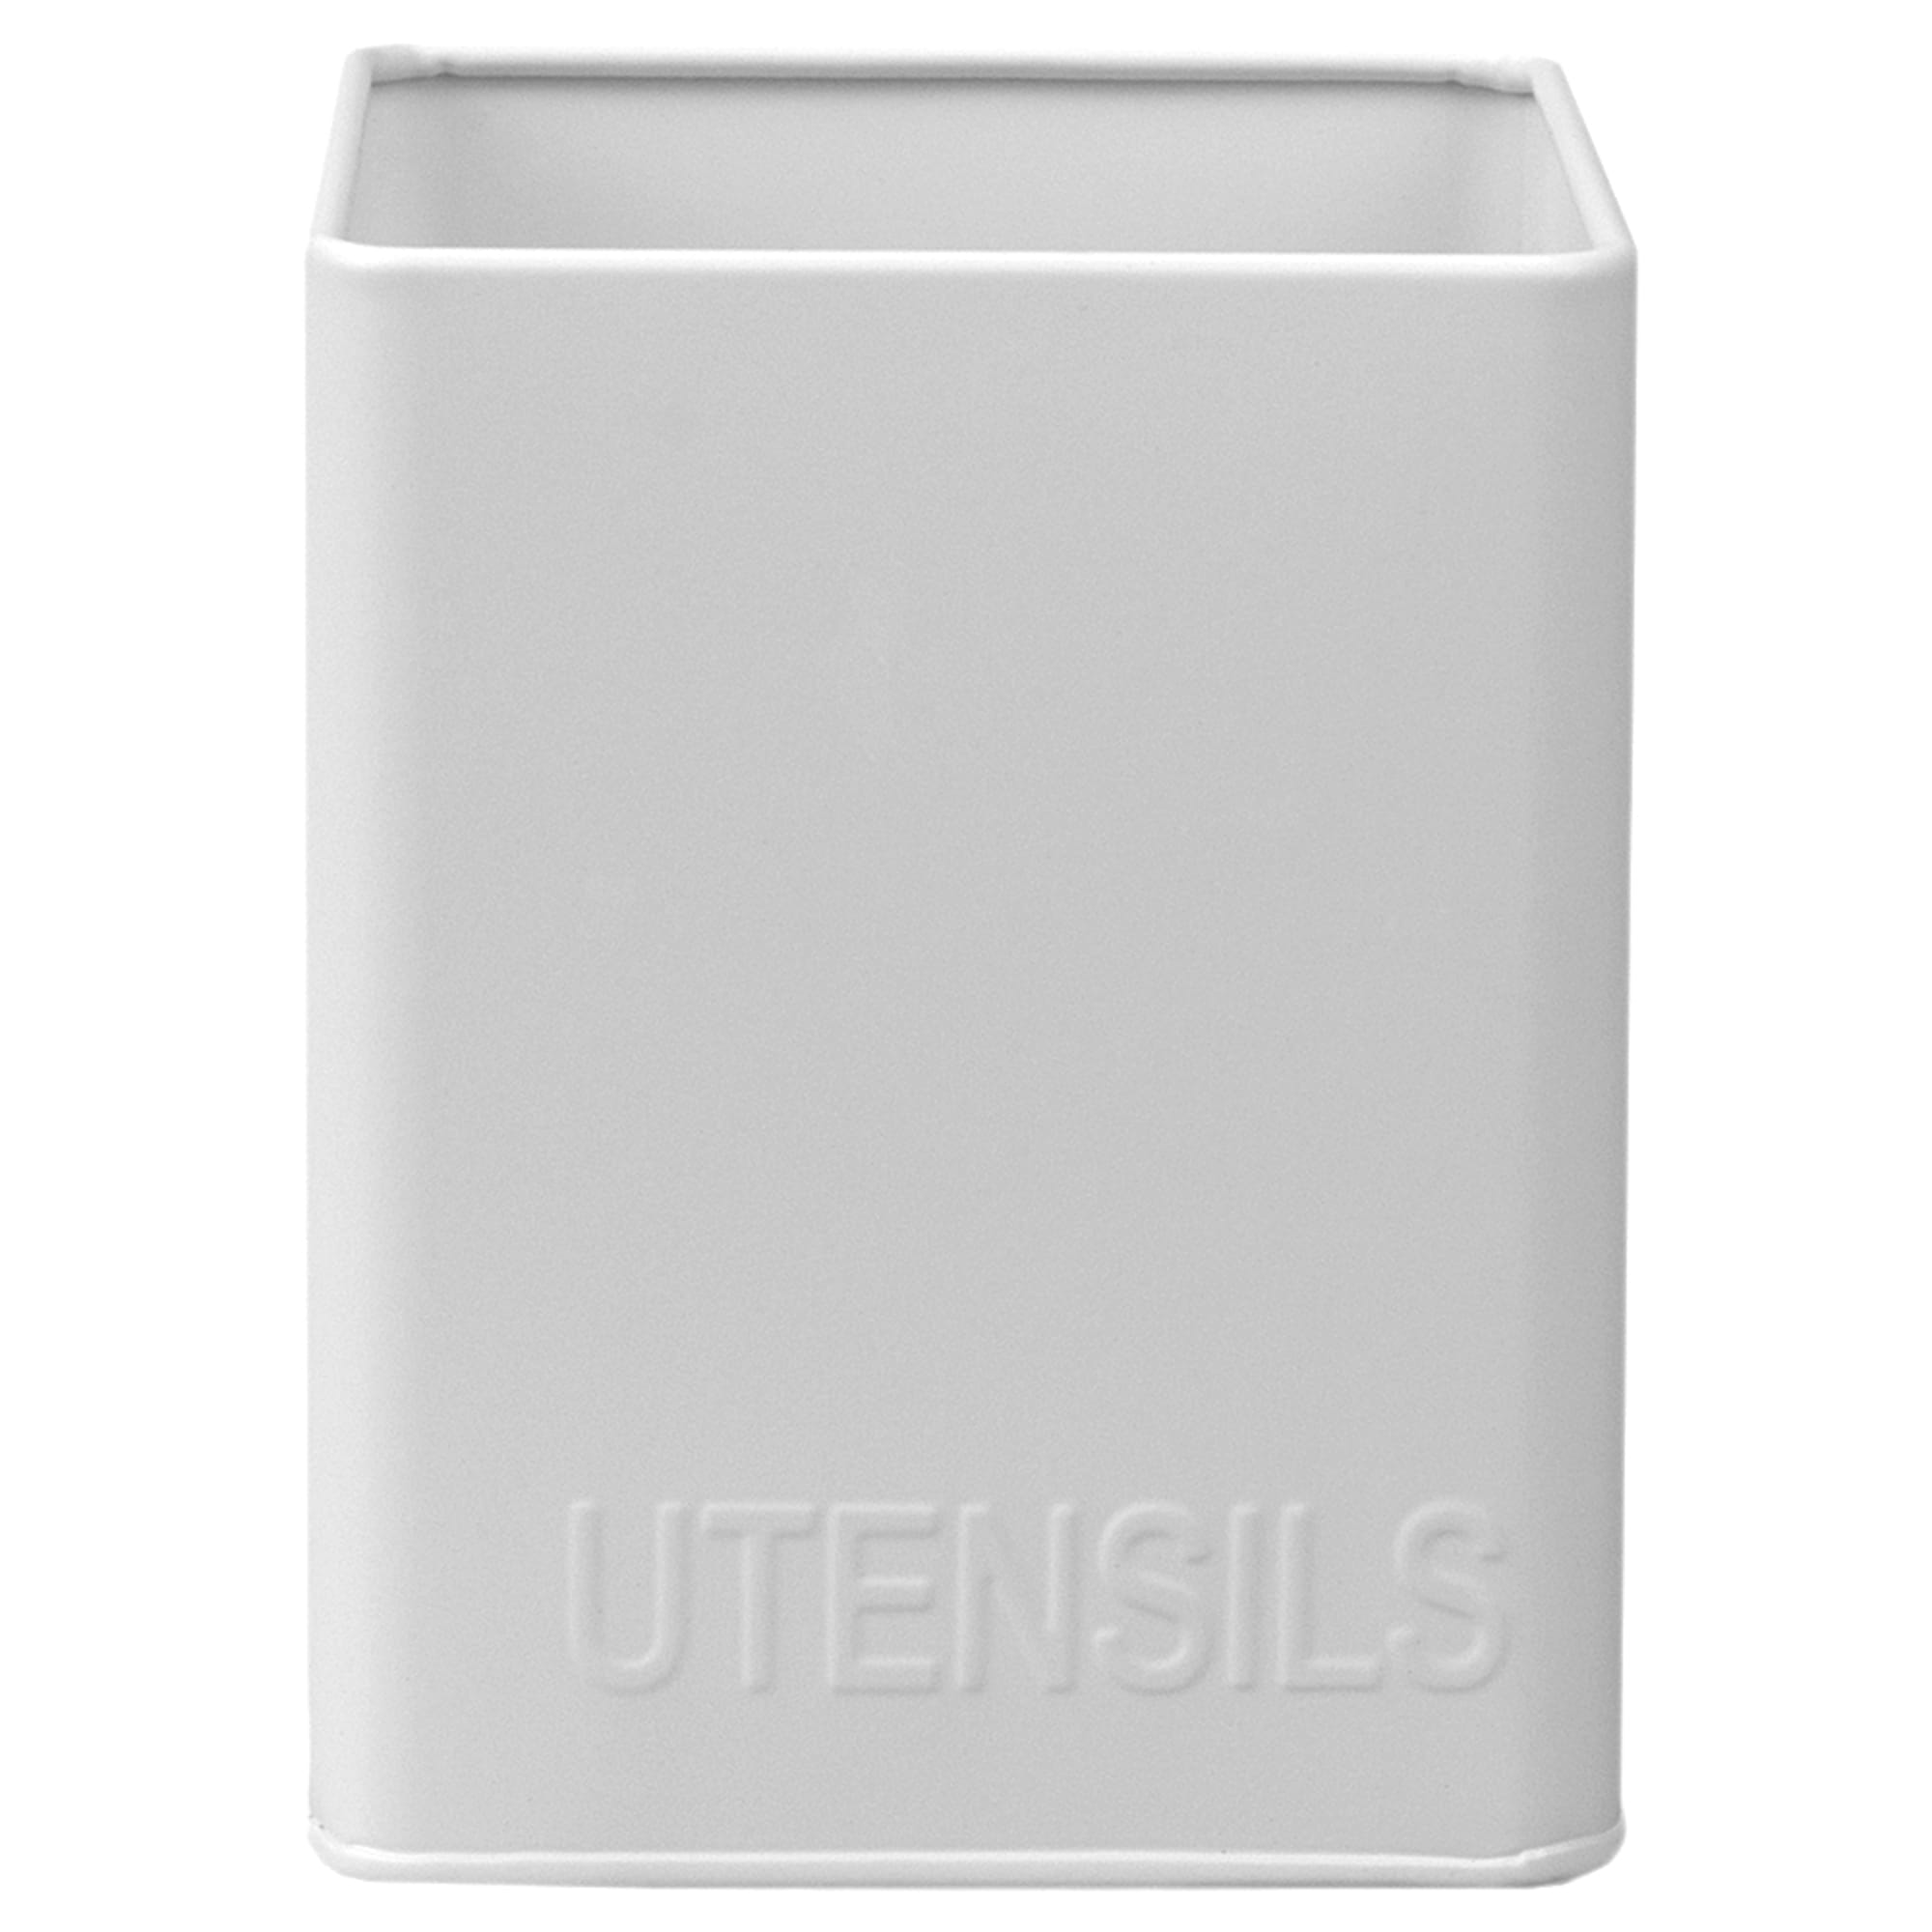 Home Basics Tin Utensil Holder, White $3.00 EACH, CASE PACK OF 12